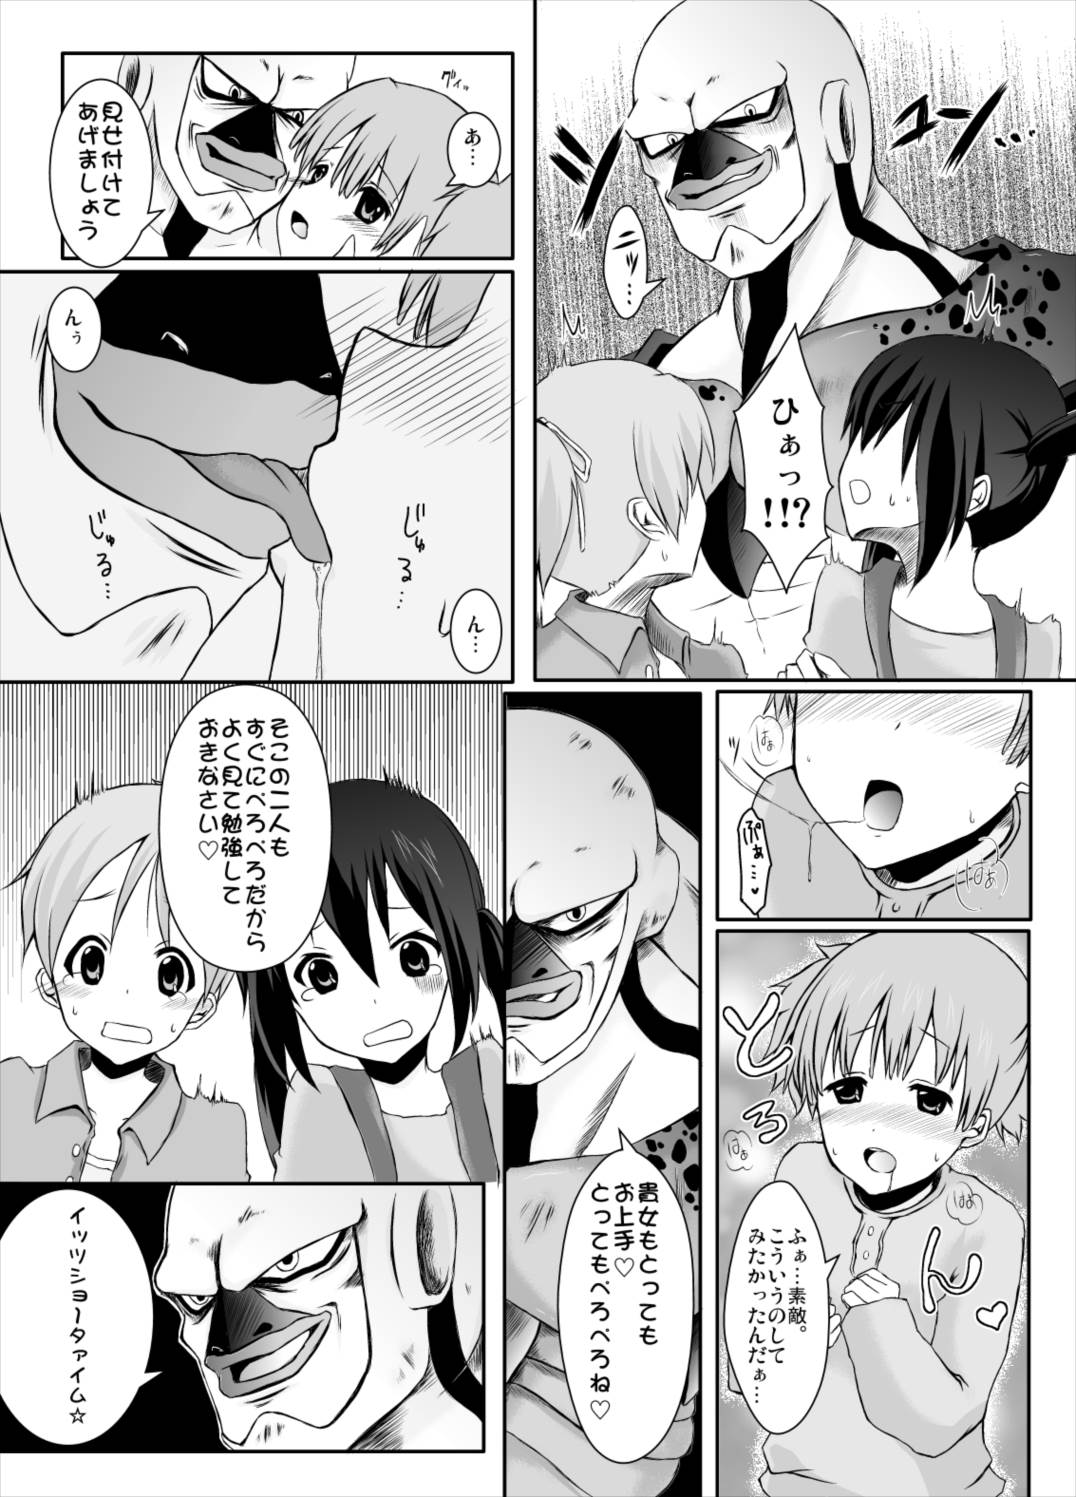 ragho-18 ユニバーサルとんちゃん 5ページ